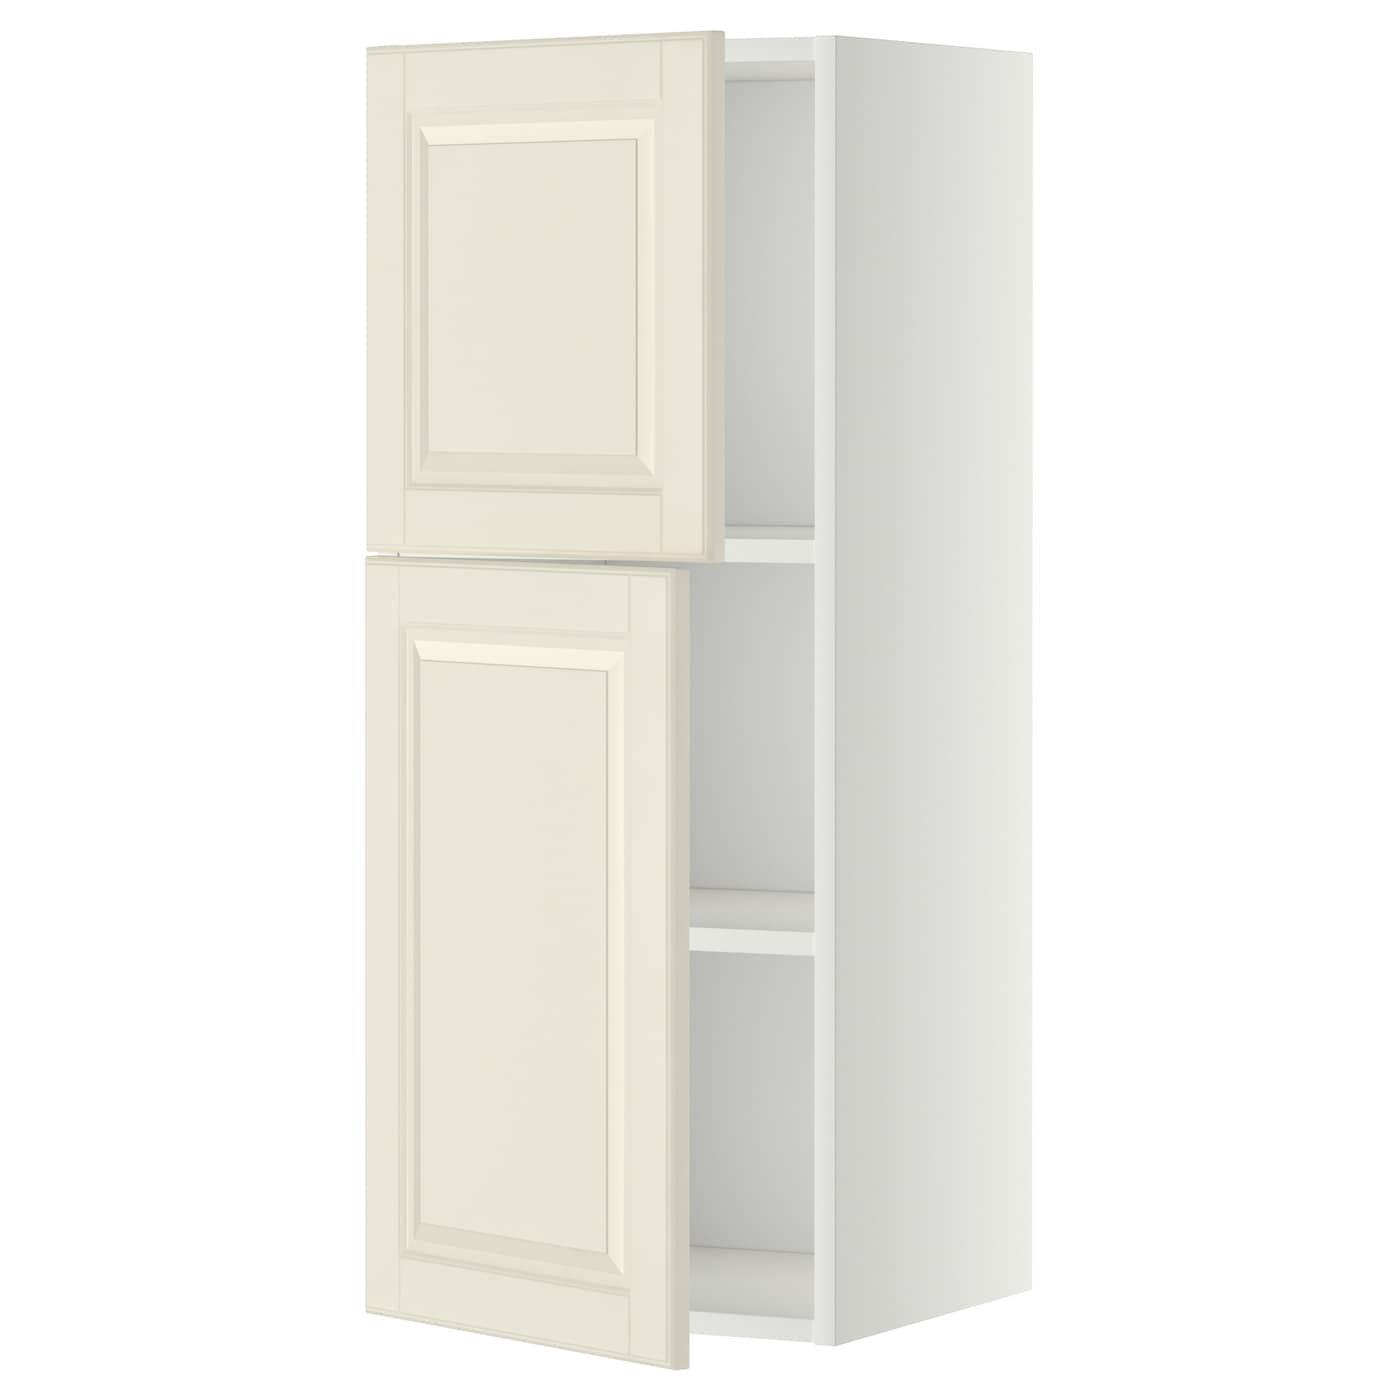 Навесной шкаф с полкой - METOD IKEA/ МЕТОД ИКЕА, 100х40 см, кремовый/белый